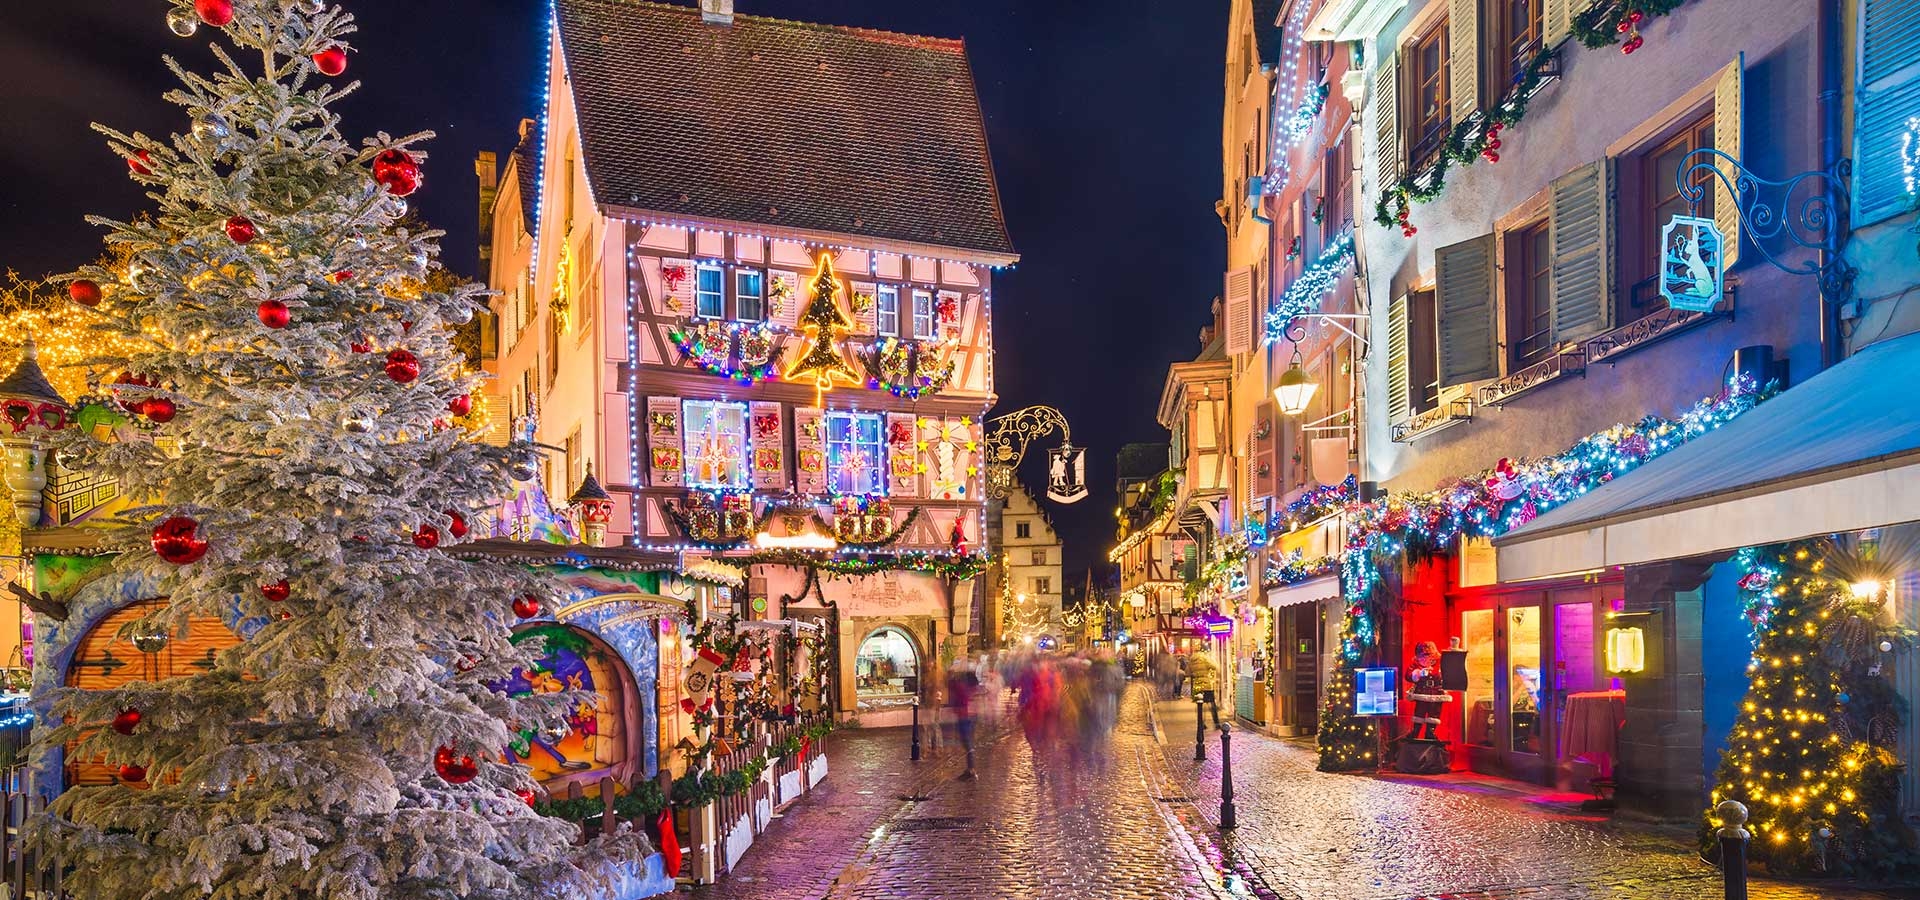 Prachtige sfeervolle stad Colmar in Frankrijk is zeker het bezoeker waard!